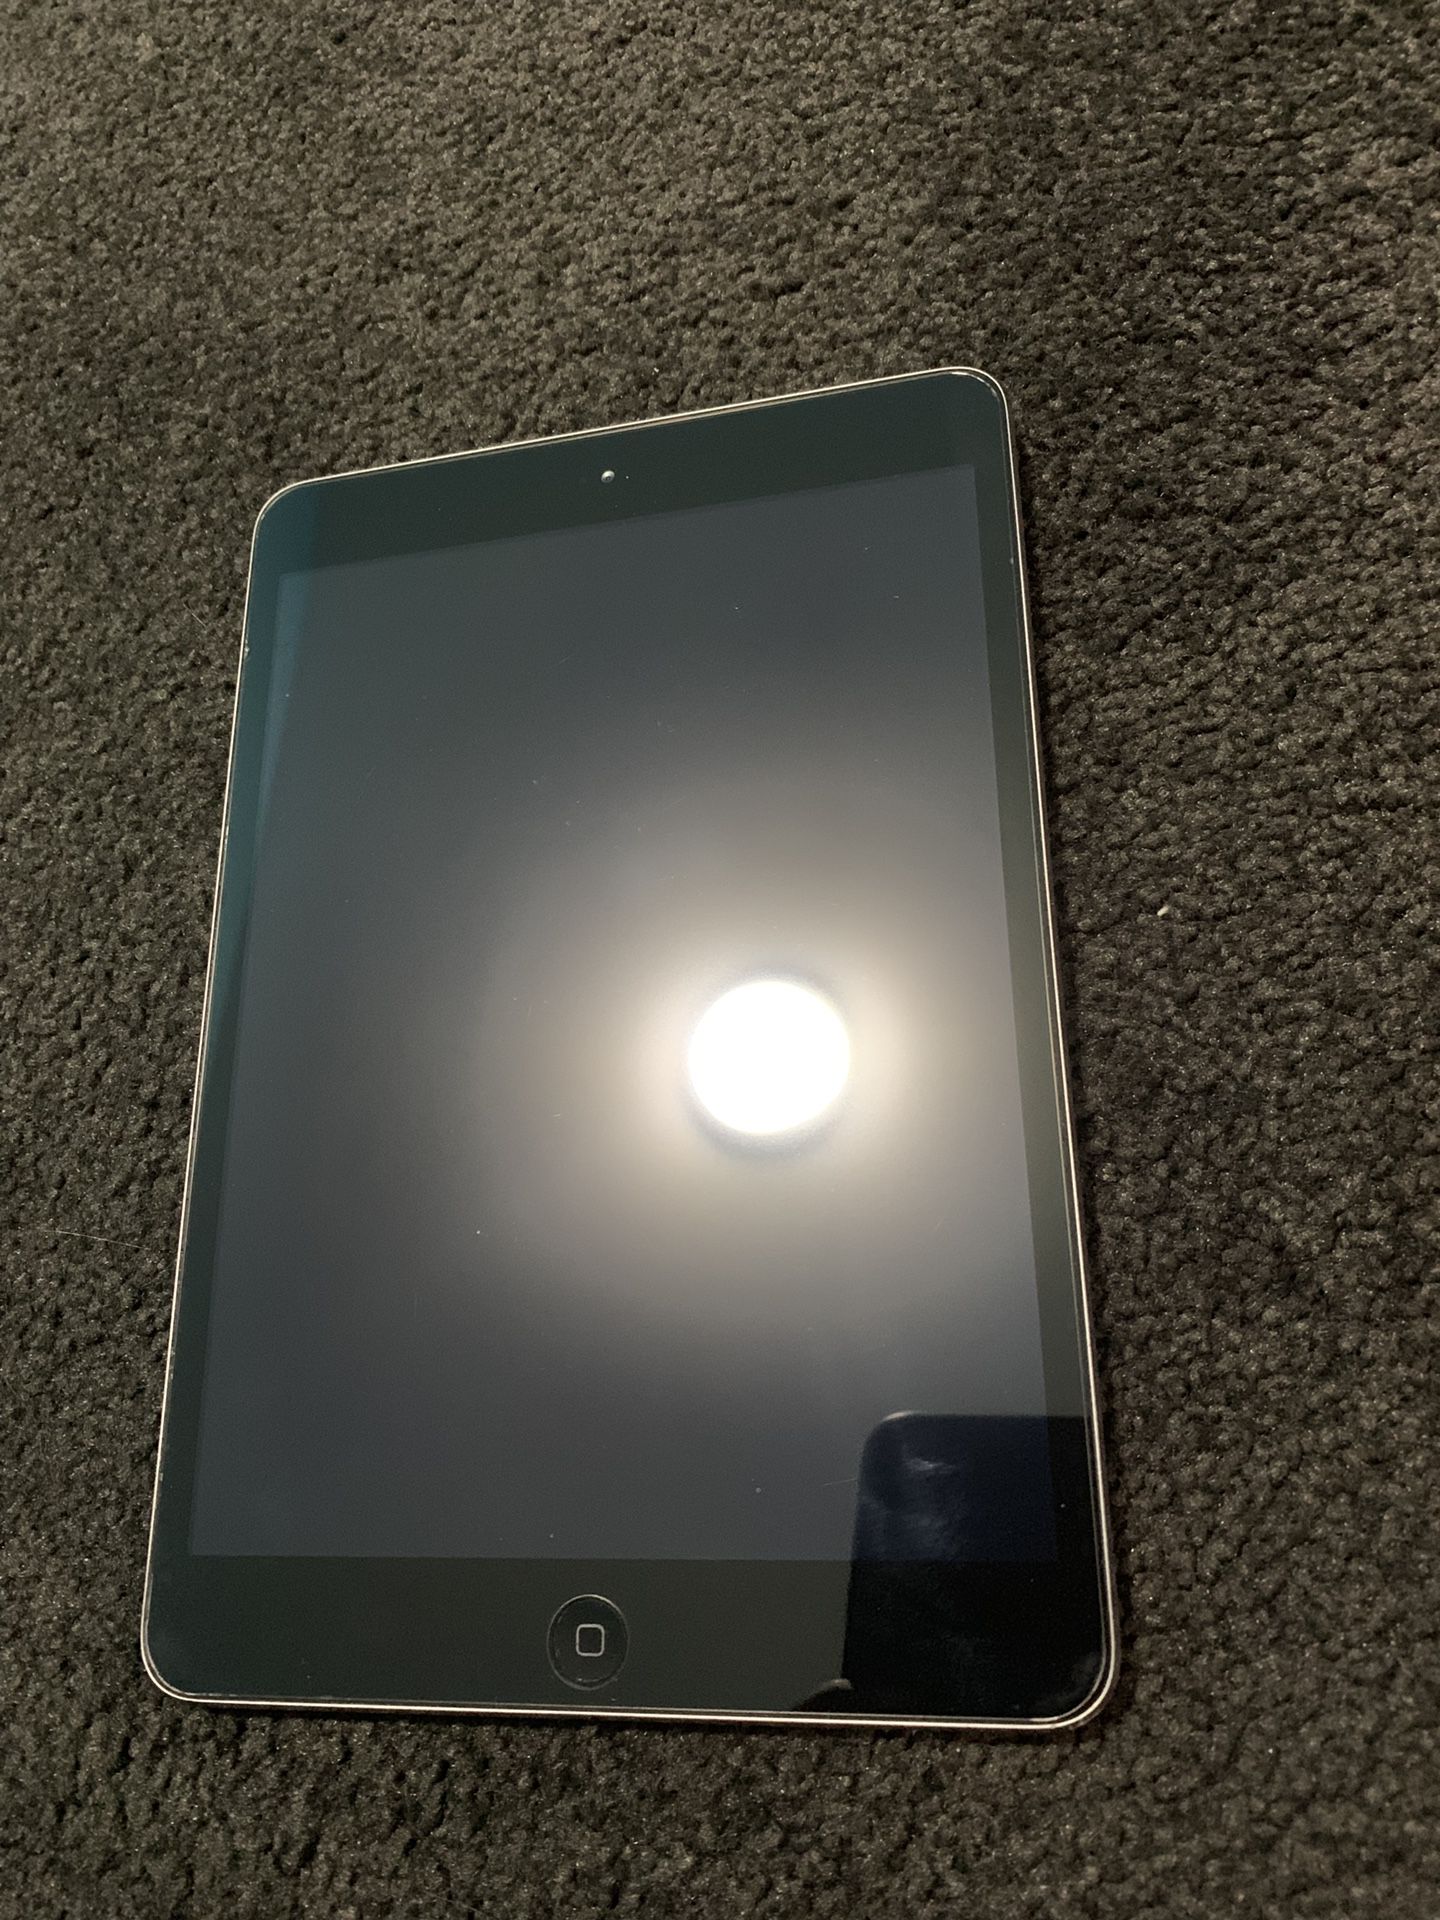 Apple iPad mini 2 space gray 16gb wifi